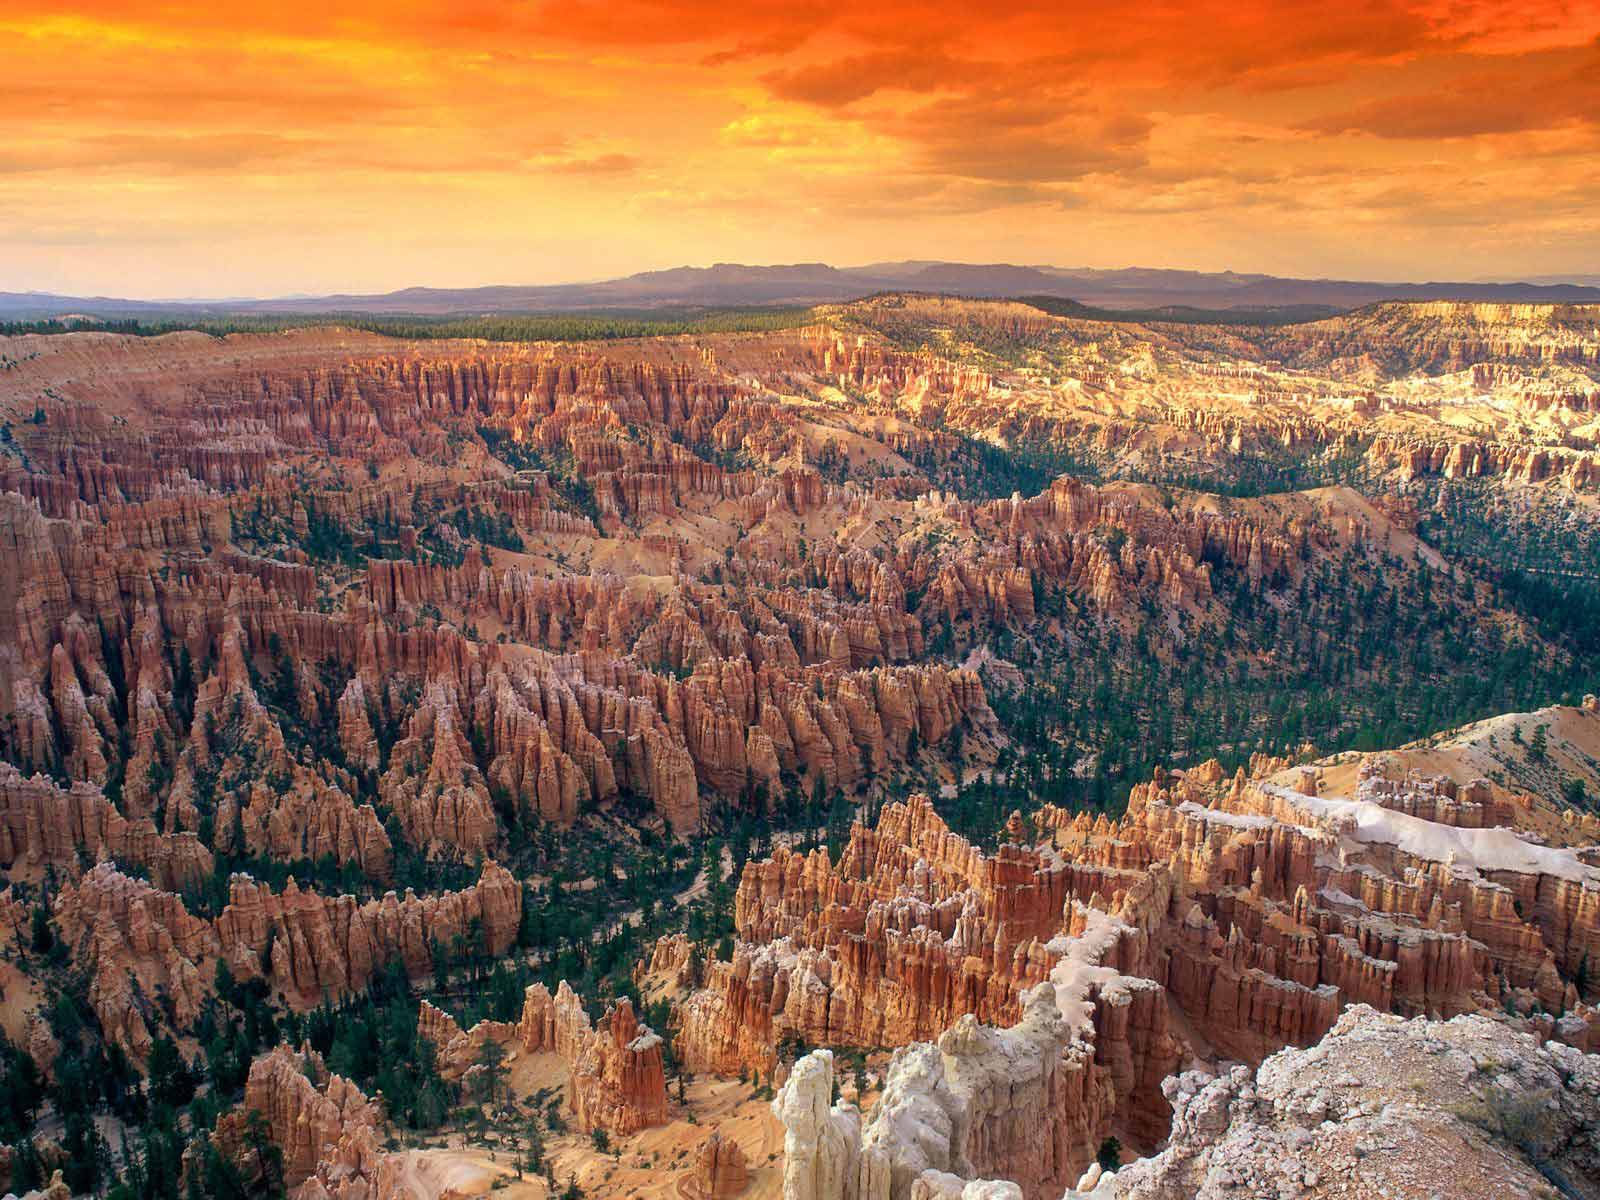 Dành riêng cho những ai yêu thích phong cảnh thiên nhiên, Utah Wallpaper Gallery là một kho tàng của những hình nền máy tính đẹp nhất về vùng đất Utah. Bộ sưu tập này bao gồm những tác phẩm của các nhiếp ảnh gia tài năng trên toàn thế giới và không ngừng được bổ sung để đem lại cho bạn những trải nghiệm tuyệt vời.